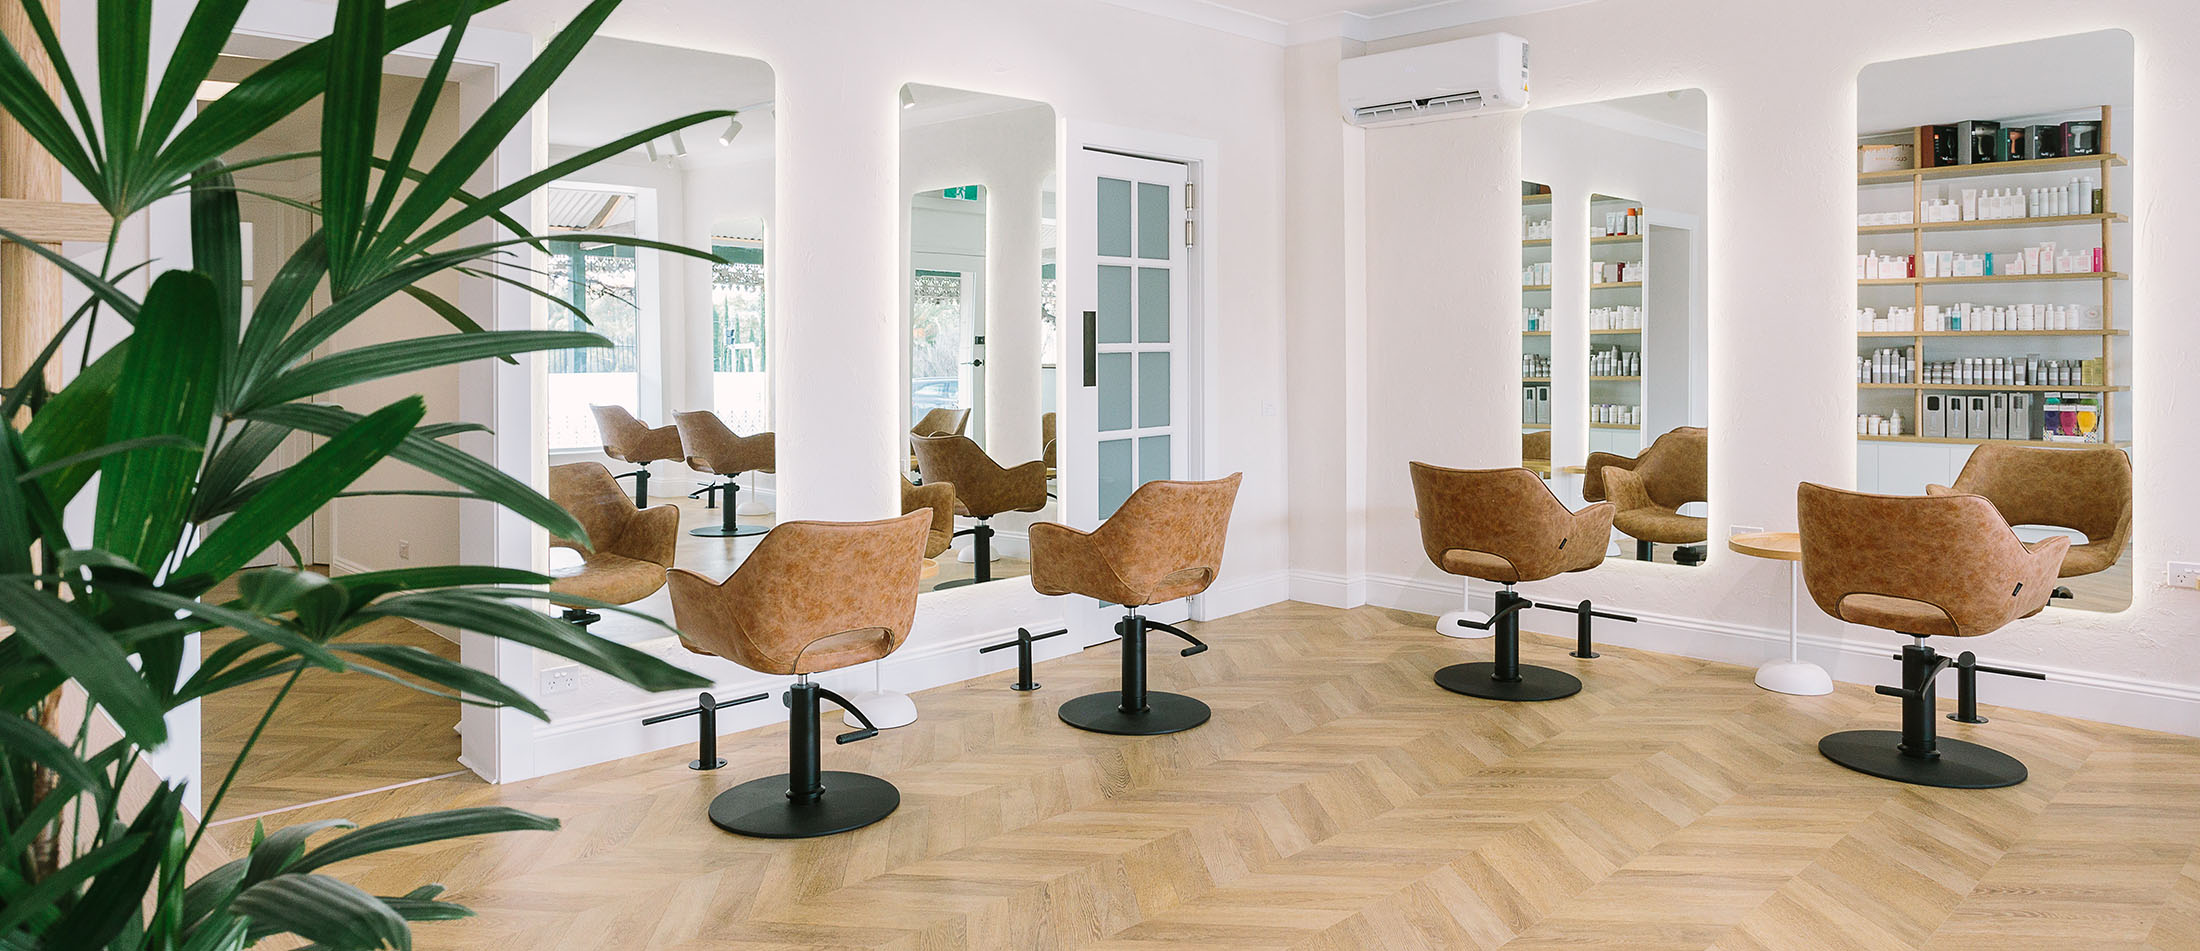 The Vine Hair Salon – Adelaide Hair Salon